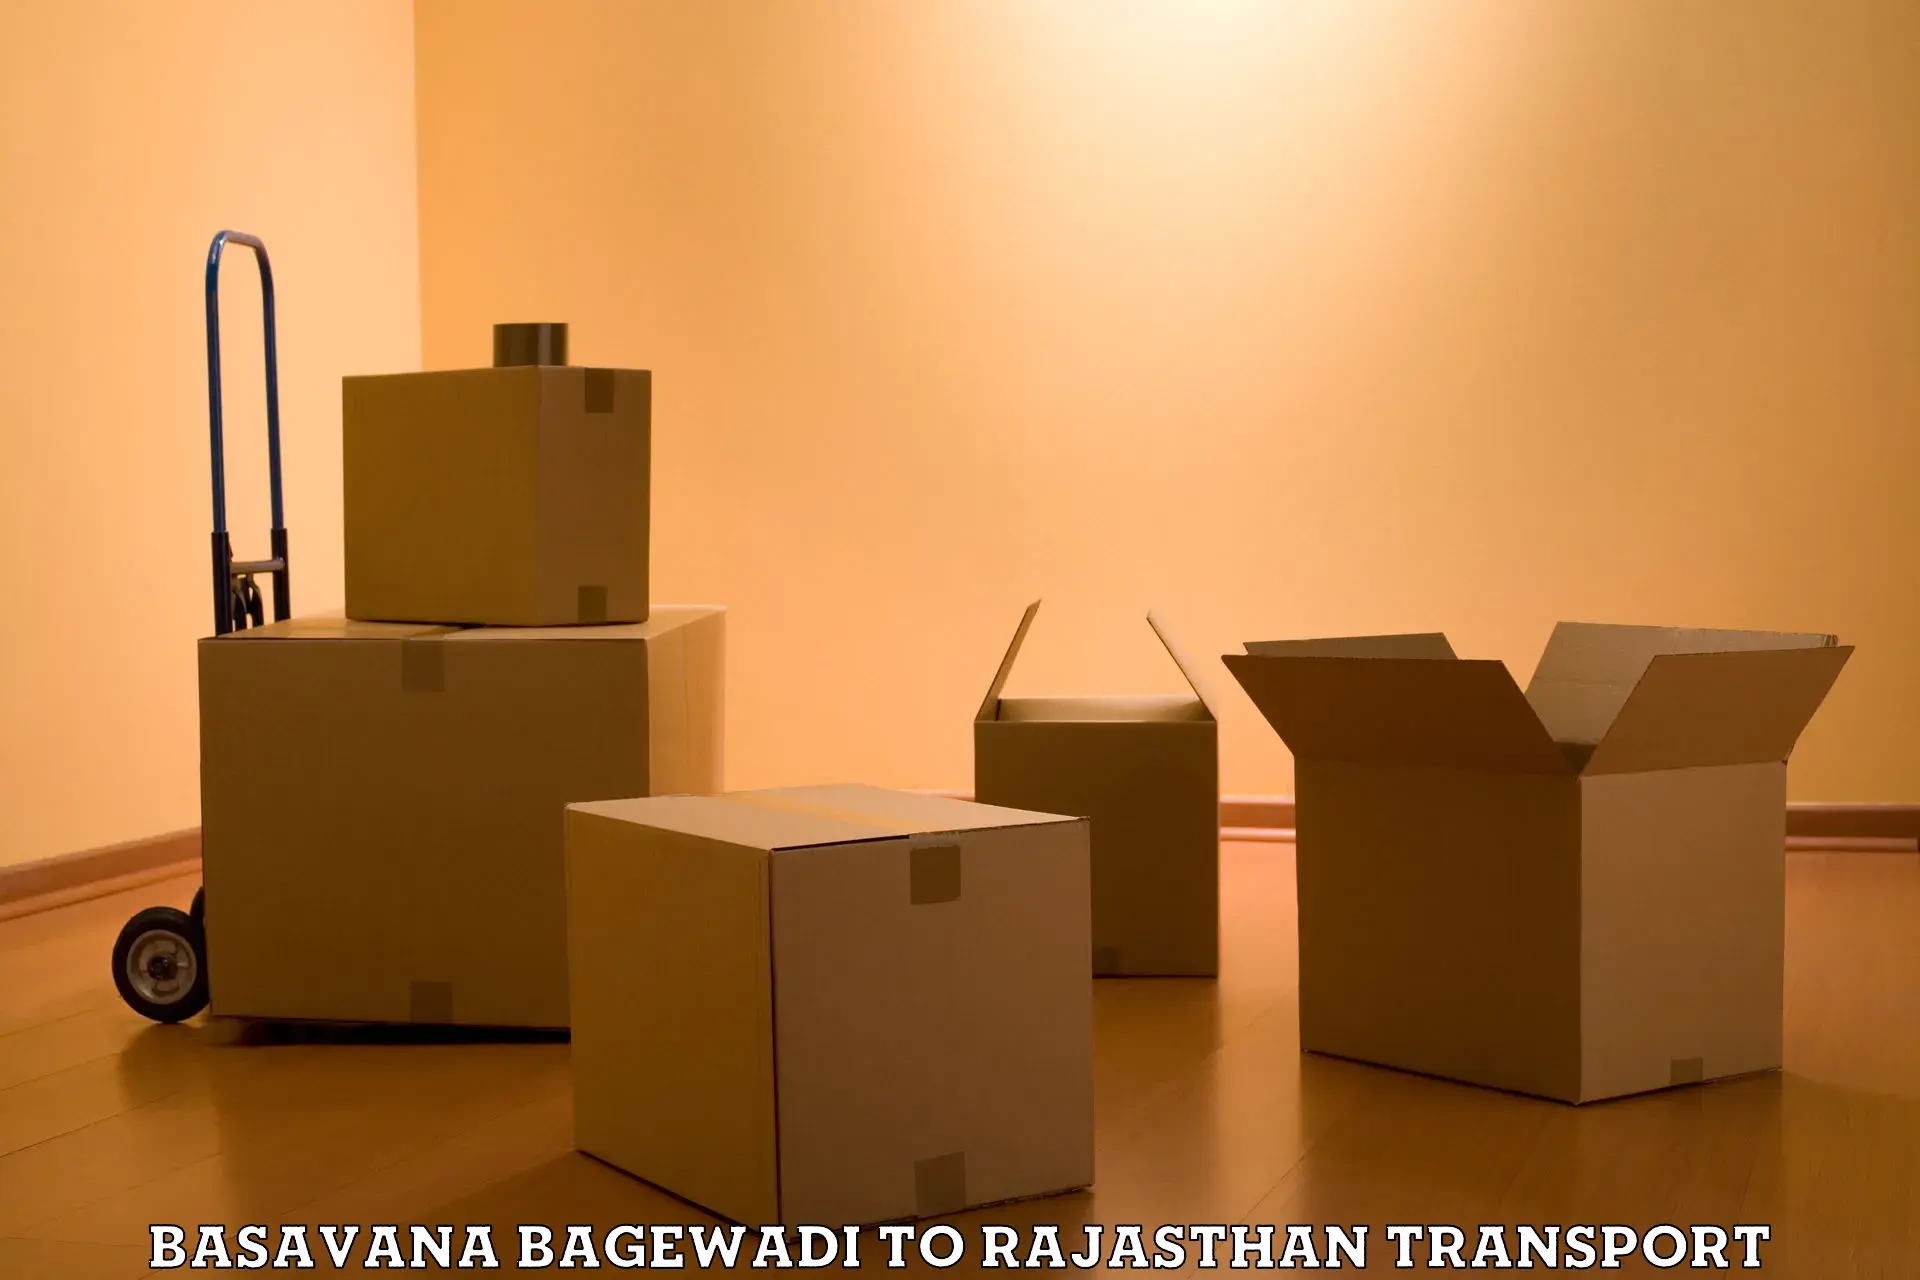 Material transport services Basavana Bagewadi to Jaipur